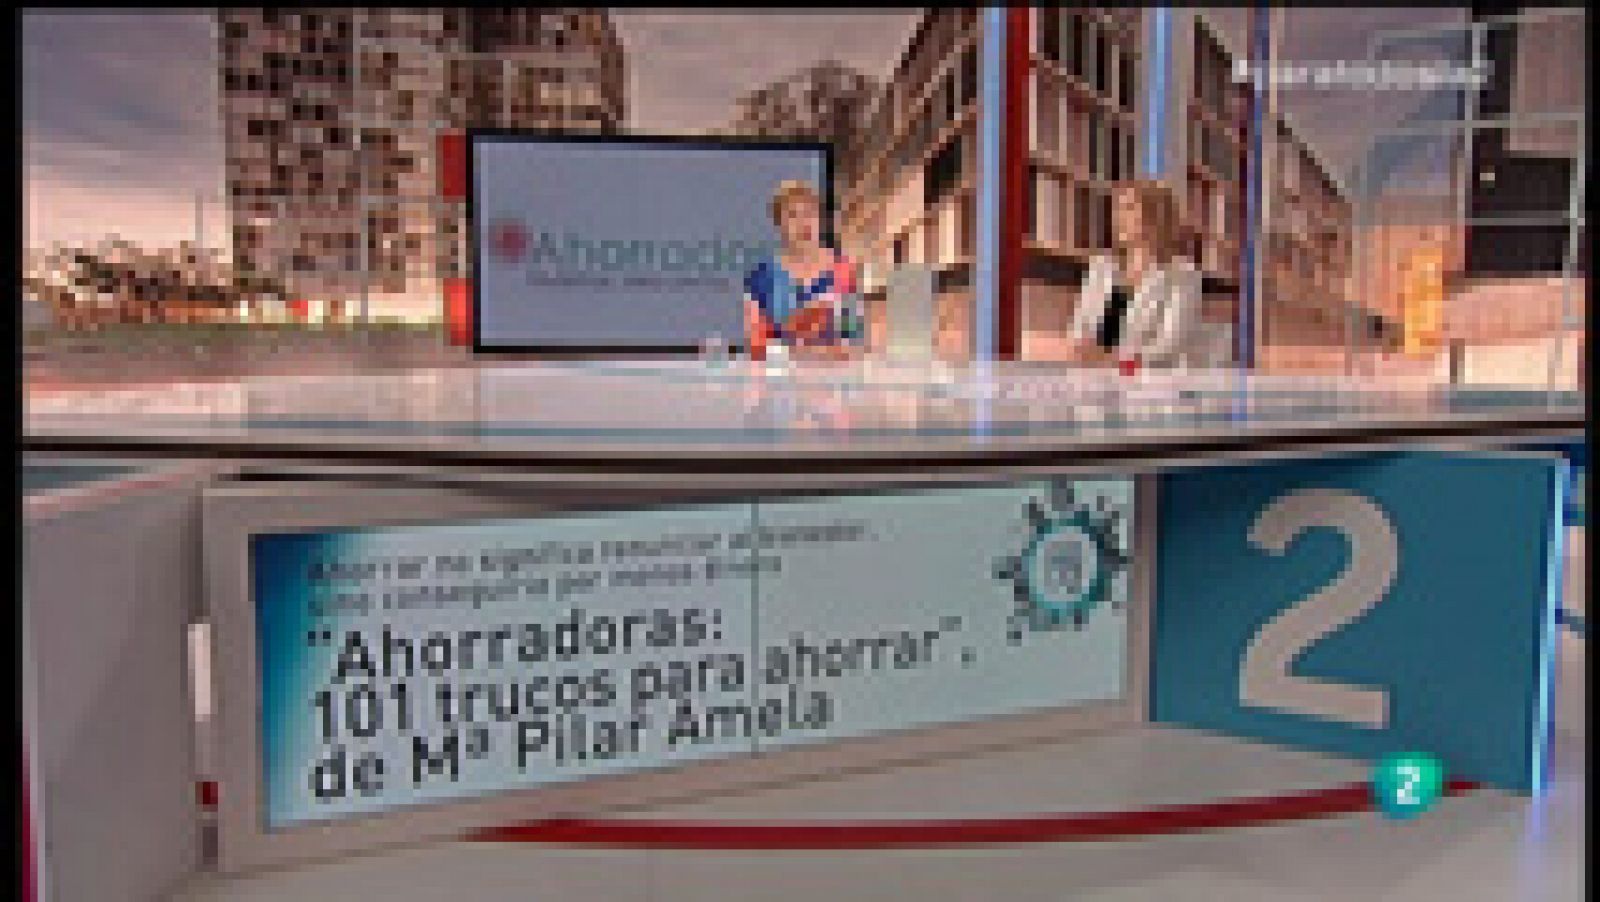 Para todos La 2: Mª Pilar Amela, "Ahorradoras: 101 trucos para ahorrar" | RTVE Play